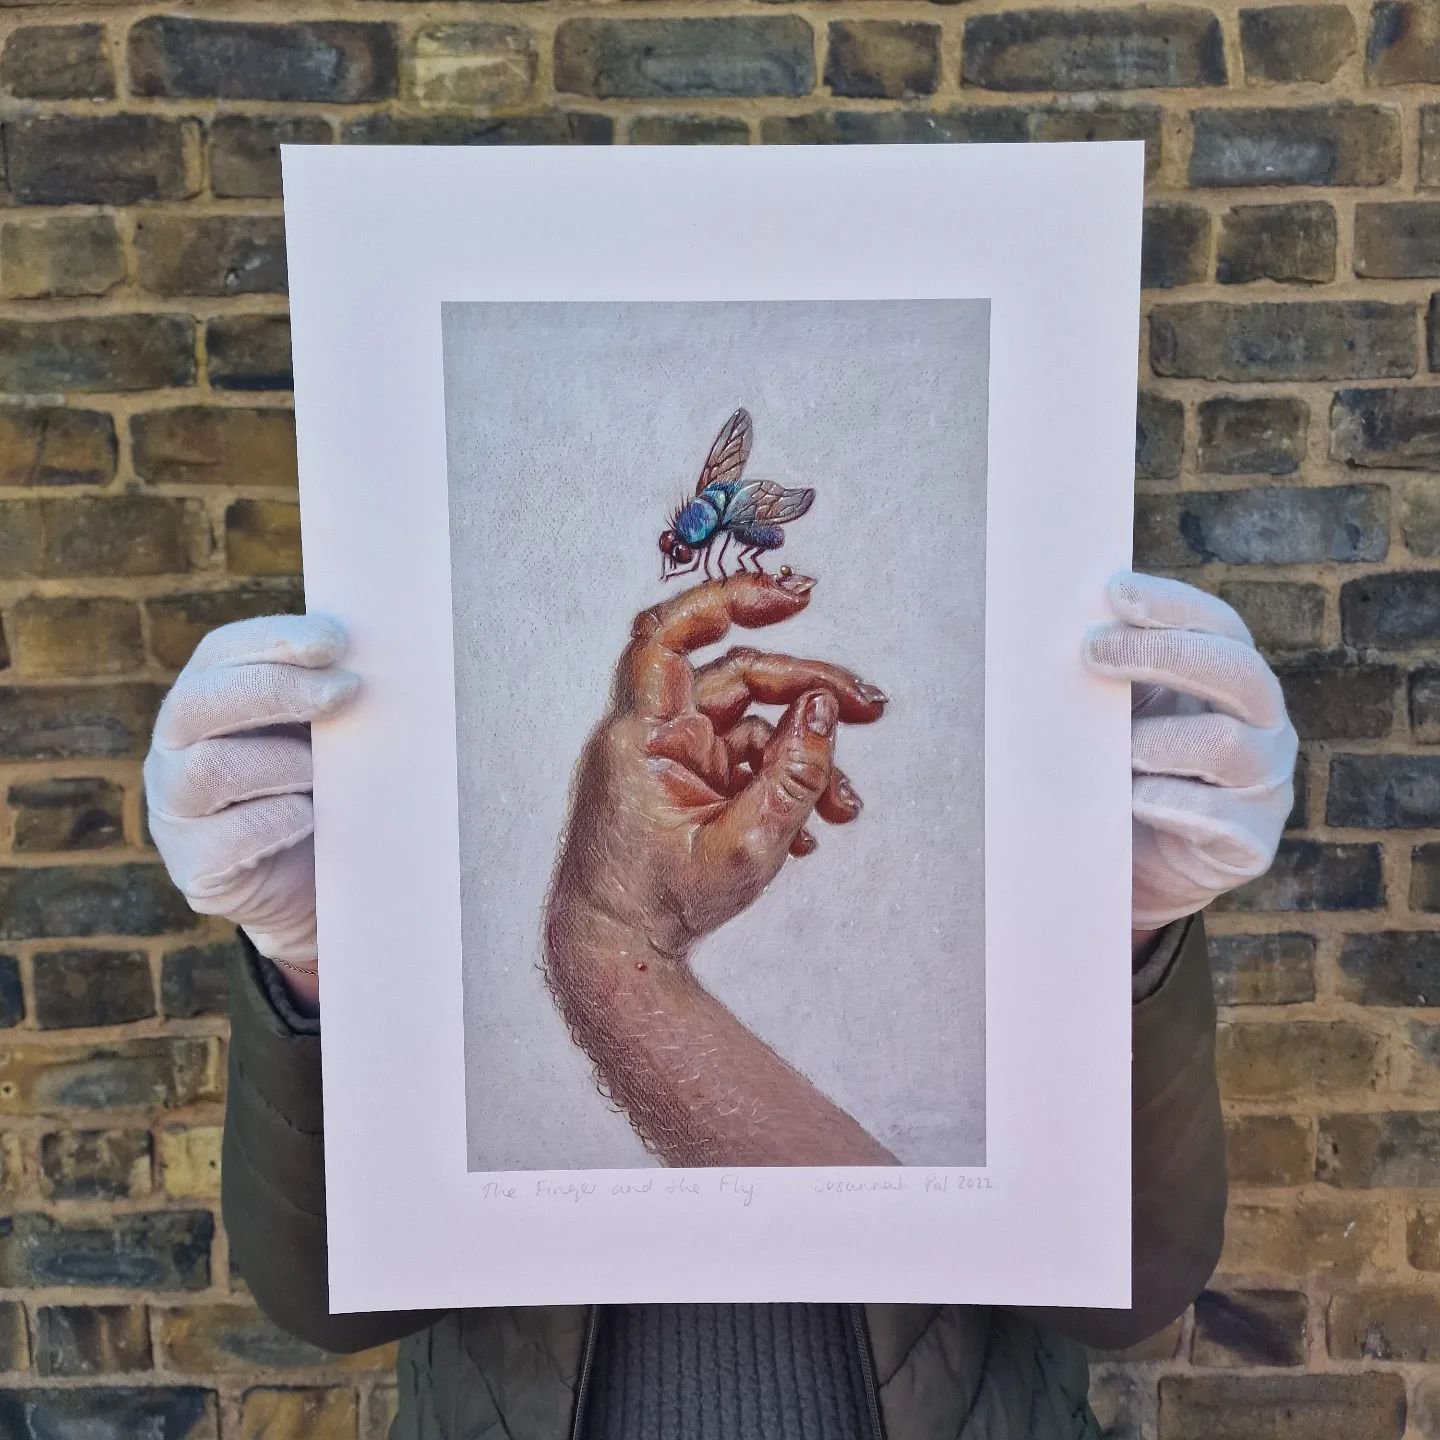 @xennial_gallery 

&quot;The finger and the fly.&quot;

By artist @susannah__pal 

Print size 280mm x 398mm

#xennialgallery #bexleyvillage #londongallery #artcollection #limitededitionprints #artcollector #artoninstagram #art #framedart #artprint #p